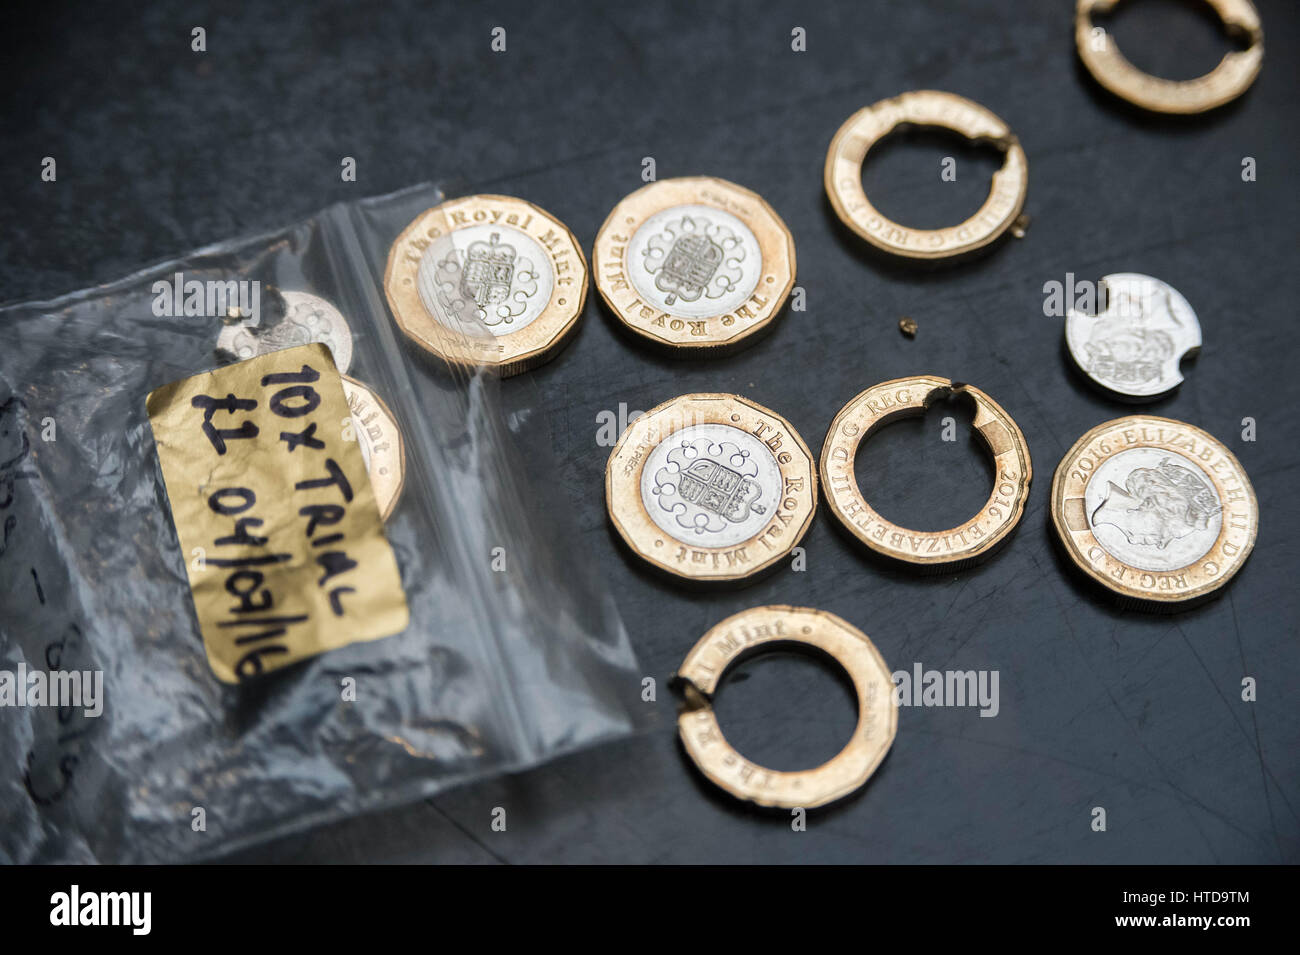 London, UK. 9. März 2017. Neue 1 Pfund-Münzen in London Assay Office vor ihrer Veröffentlichung 28. März 2017 getestet. Im Bild: Die Royal Mint brachte der Assay Office 10 Testversion Münzen vor Weihnachten. Diese neuen Münzen sollen die sicherste und Hi-Tech-Münze entwickelt werden. Abschließende Tests durchlaufen ein paar Münzen mit Stücken der Münzen ausgebohrt, um Ebene Spurenelemente in unedlen Metallen Kredit zu testen: Guy Corbishley/Alamy Live News Stockfoto